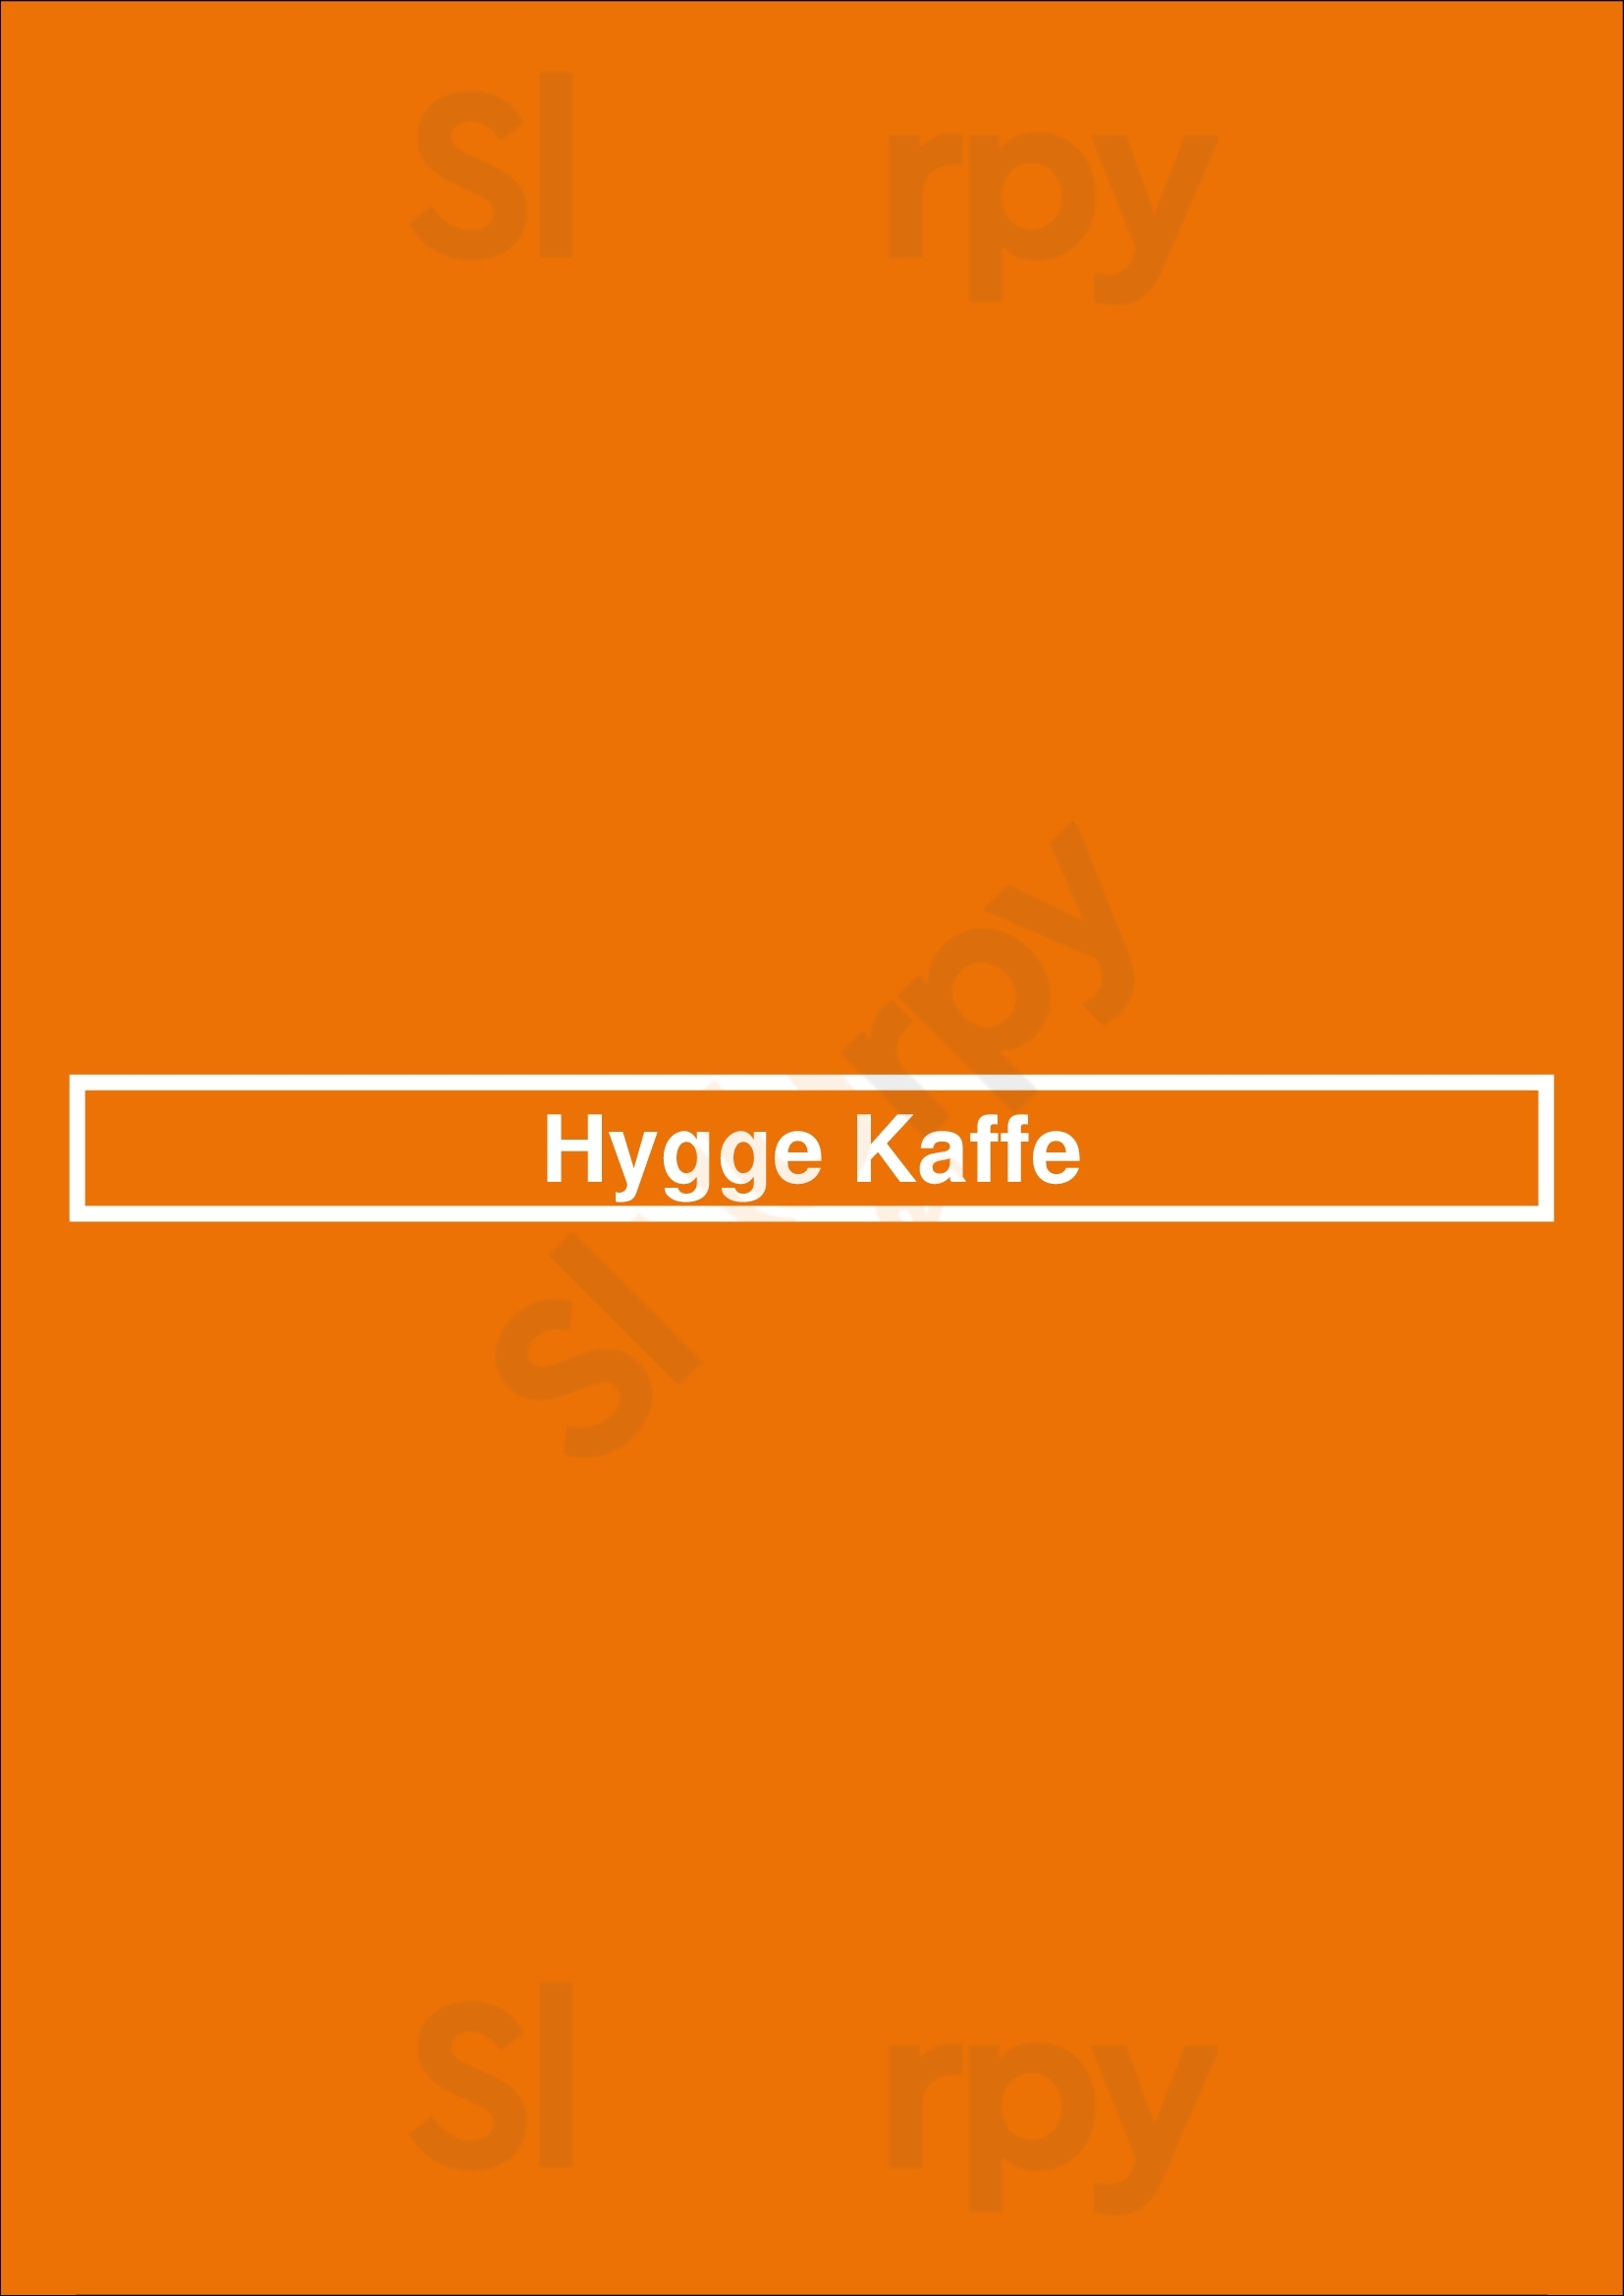 Hygge Kaffe Lisboa Menu - 1